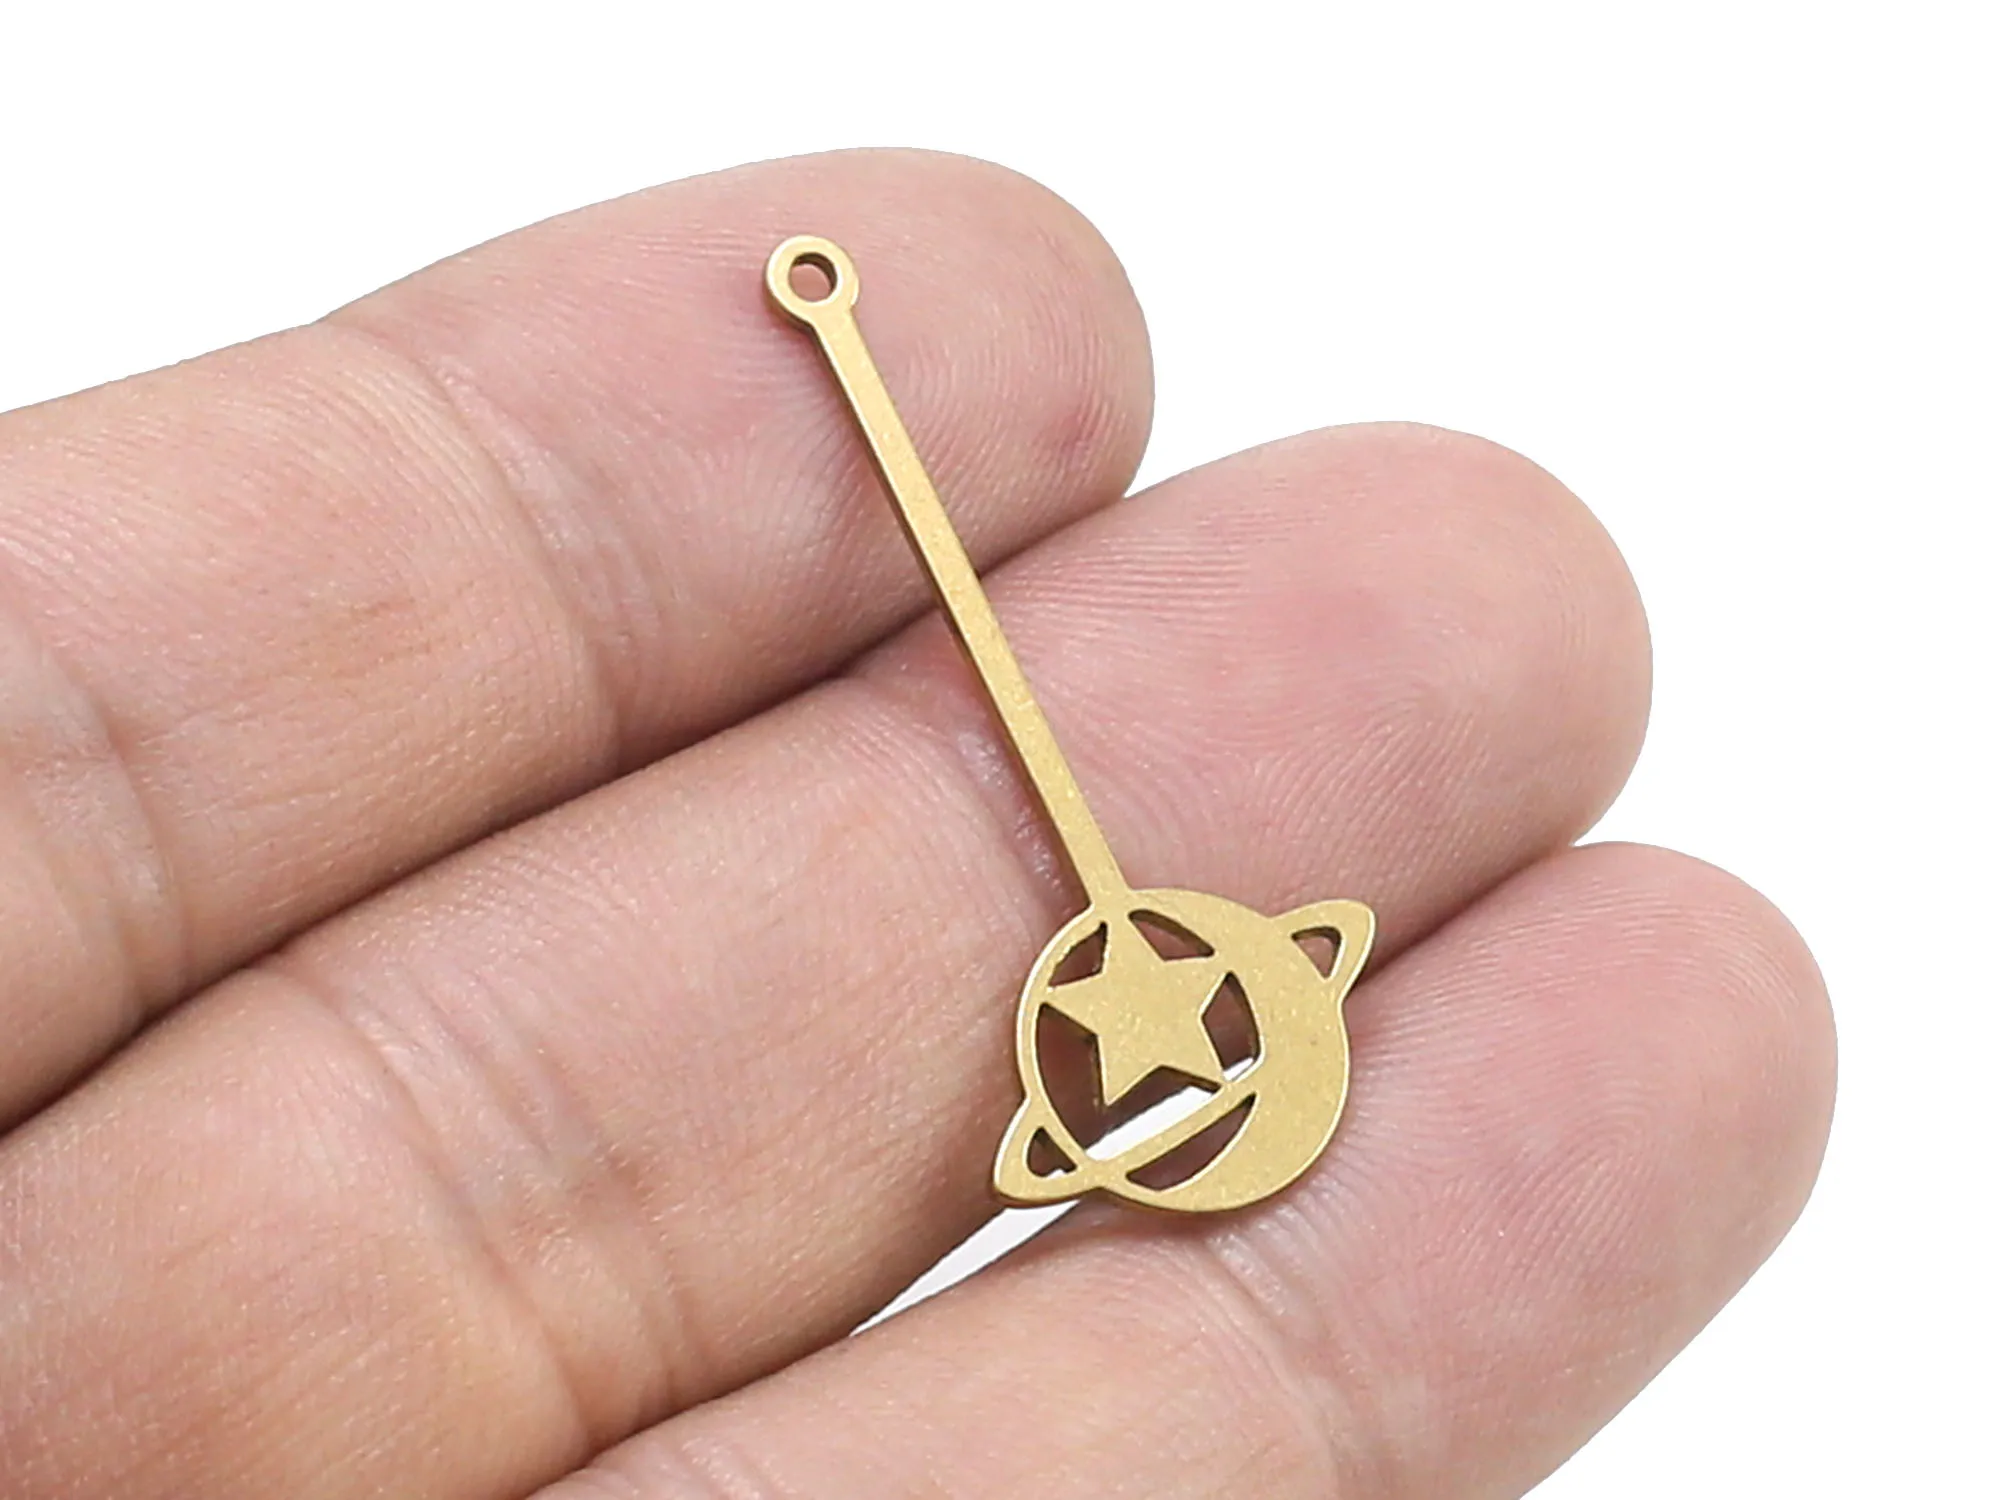 

6pcs Celestial earring drop charm, Brass earring findings, Brass stay planet pendant, 35x16mm Raw brass findings R1516